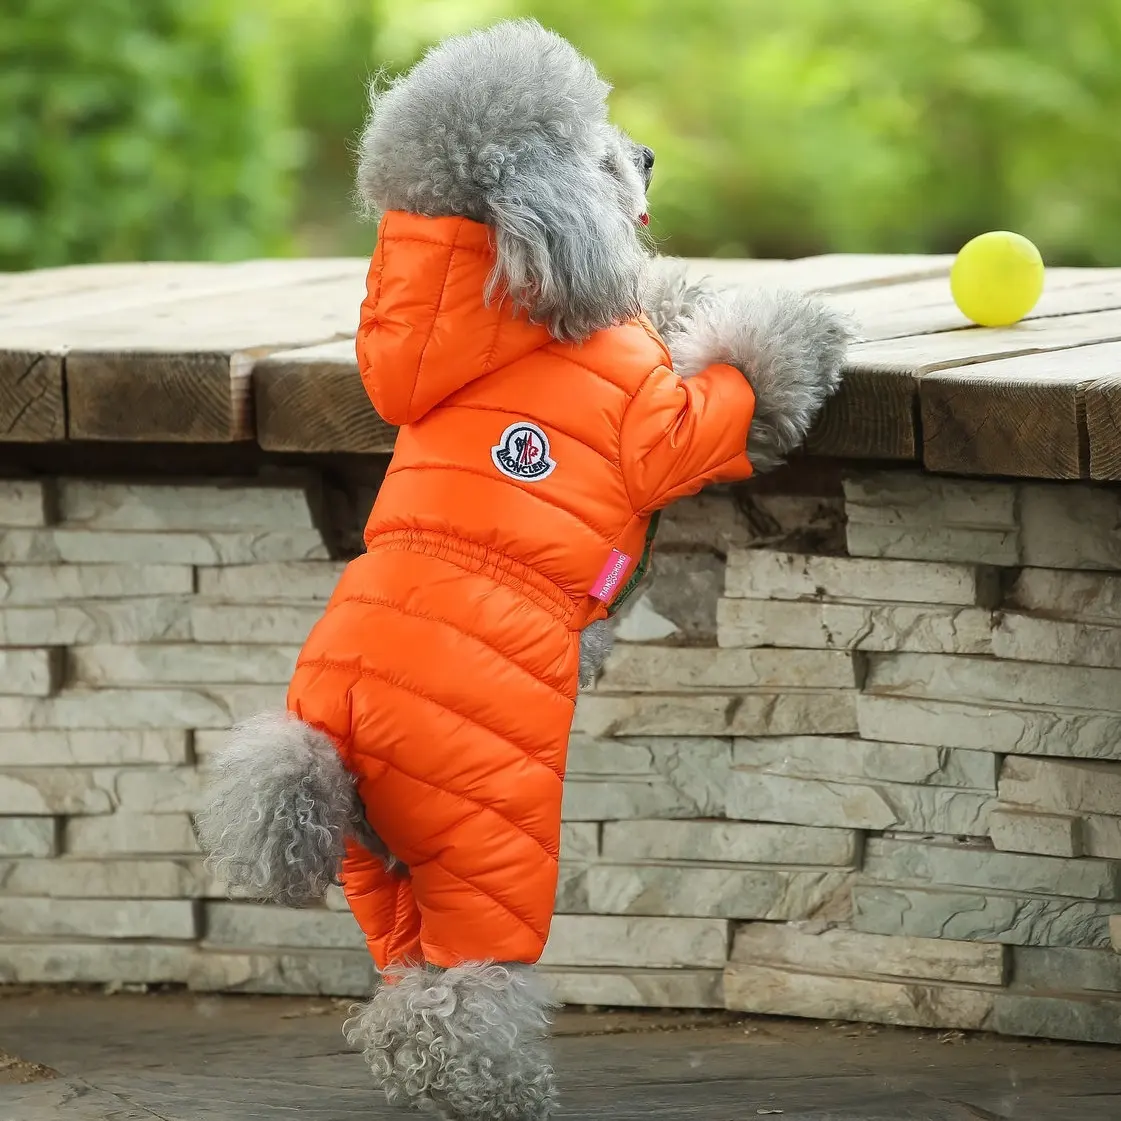 Amazon hotsale dog winter clothes dog puffer jacket dog winter coat ropa de invierno para perros chaqueta de cuero para perros